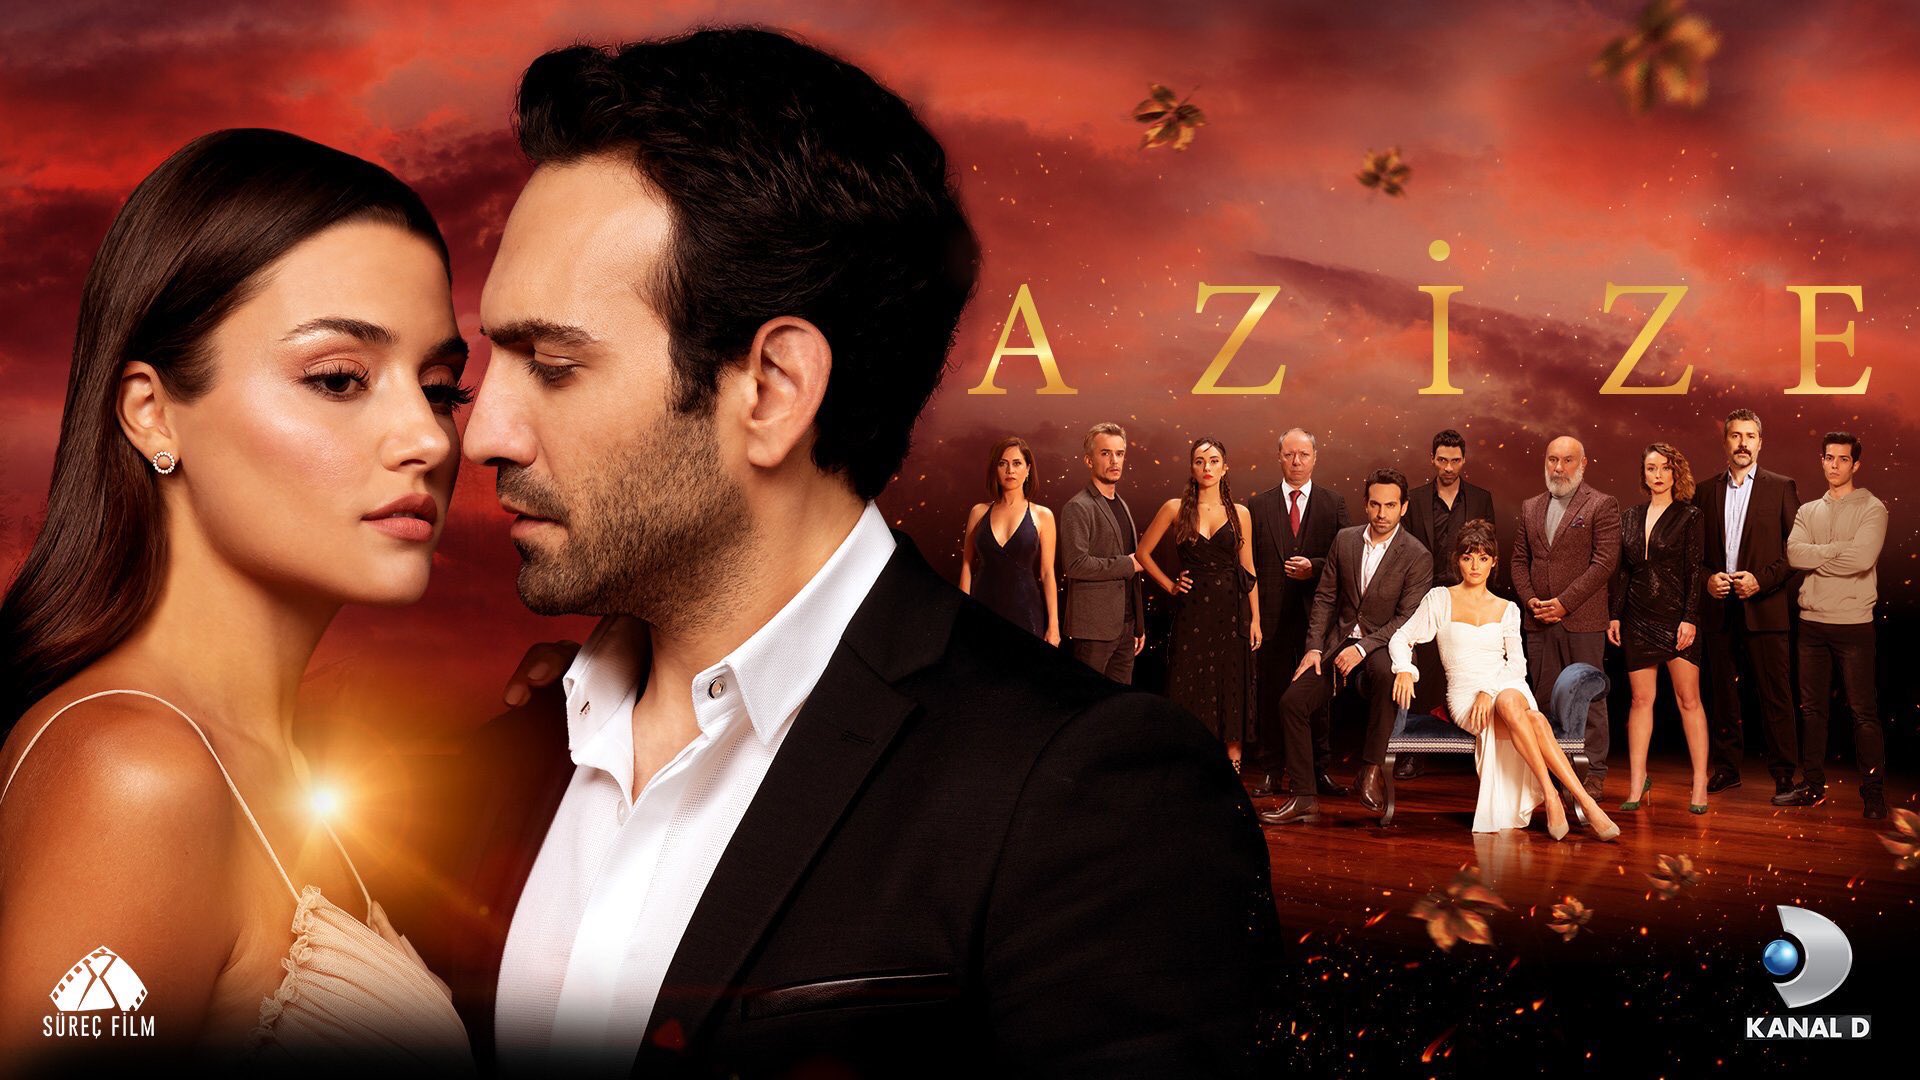 مسلسل عزيزة AZIZE بالعربية